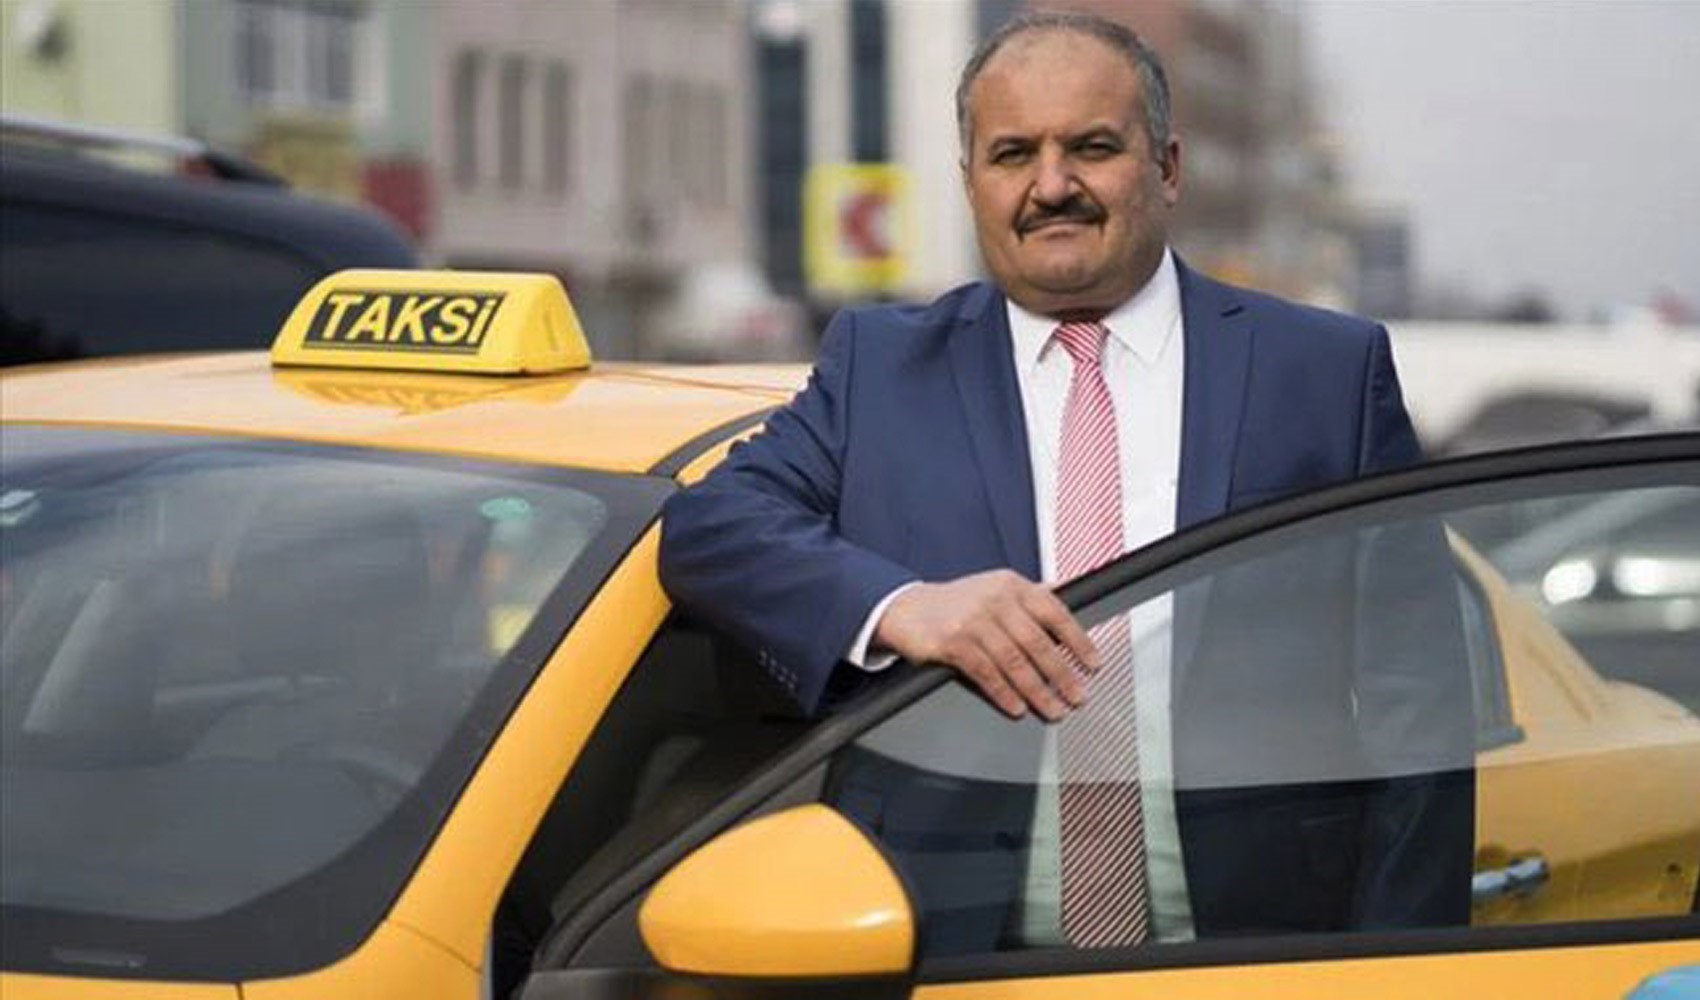 İstanbul'daki taksiler ve yurttaşlar için önemli gelişme. Eyüp Aksu'dan yeni karar